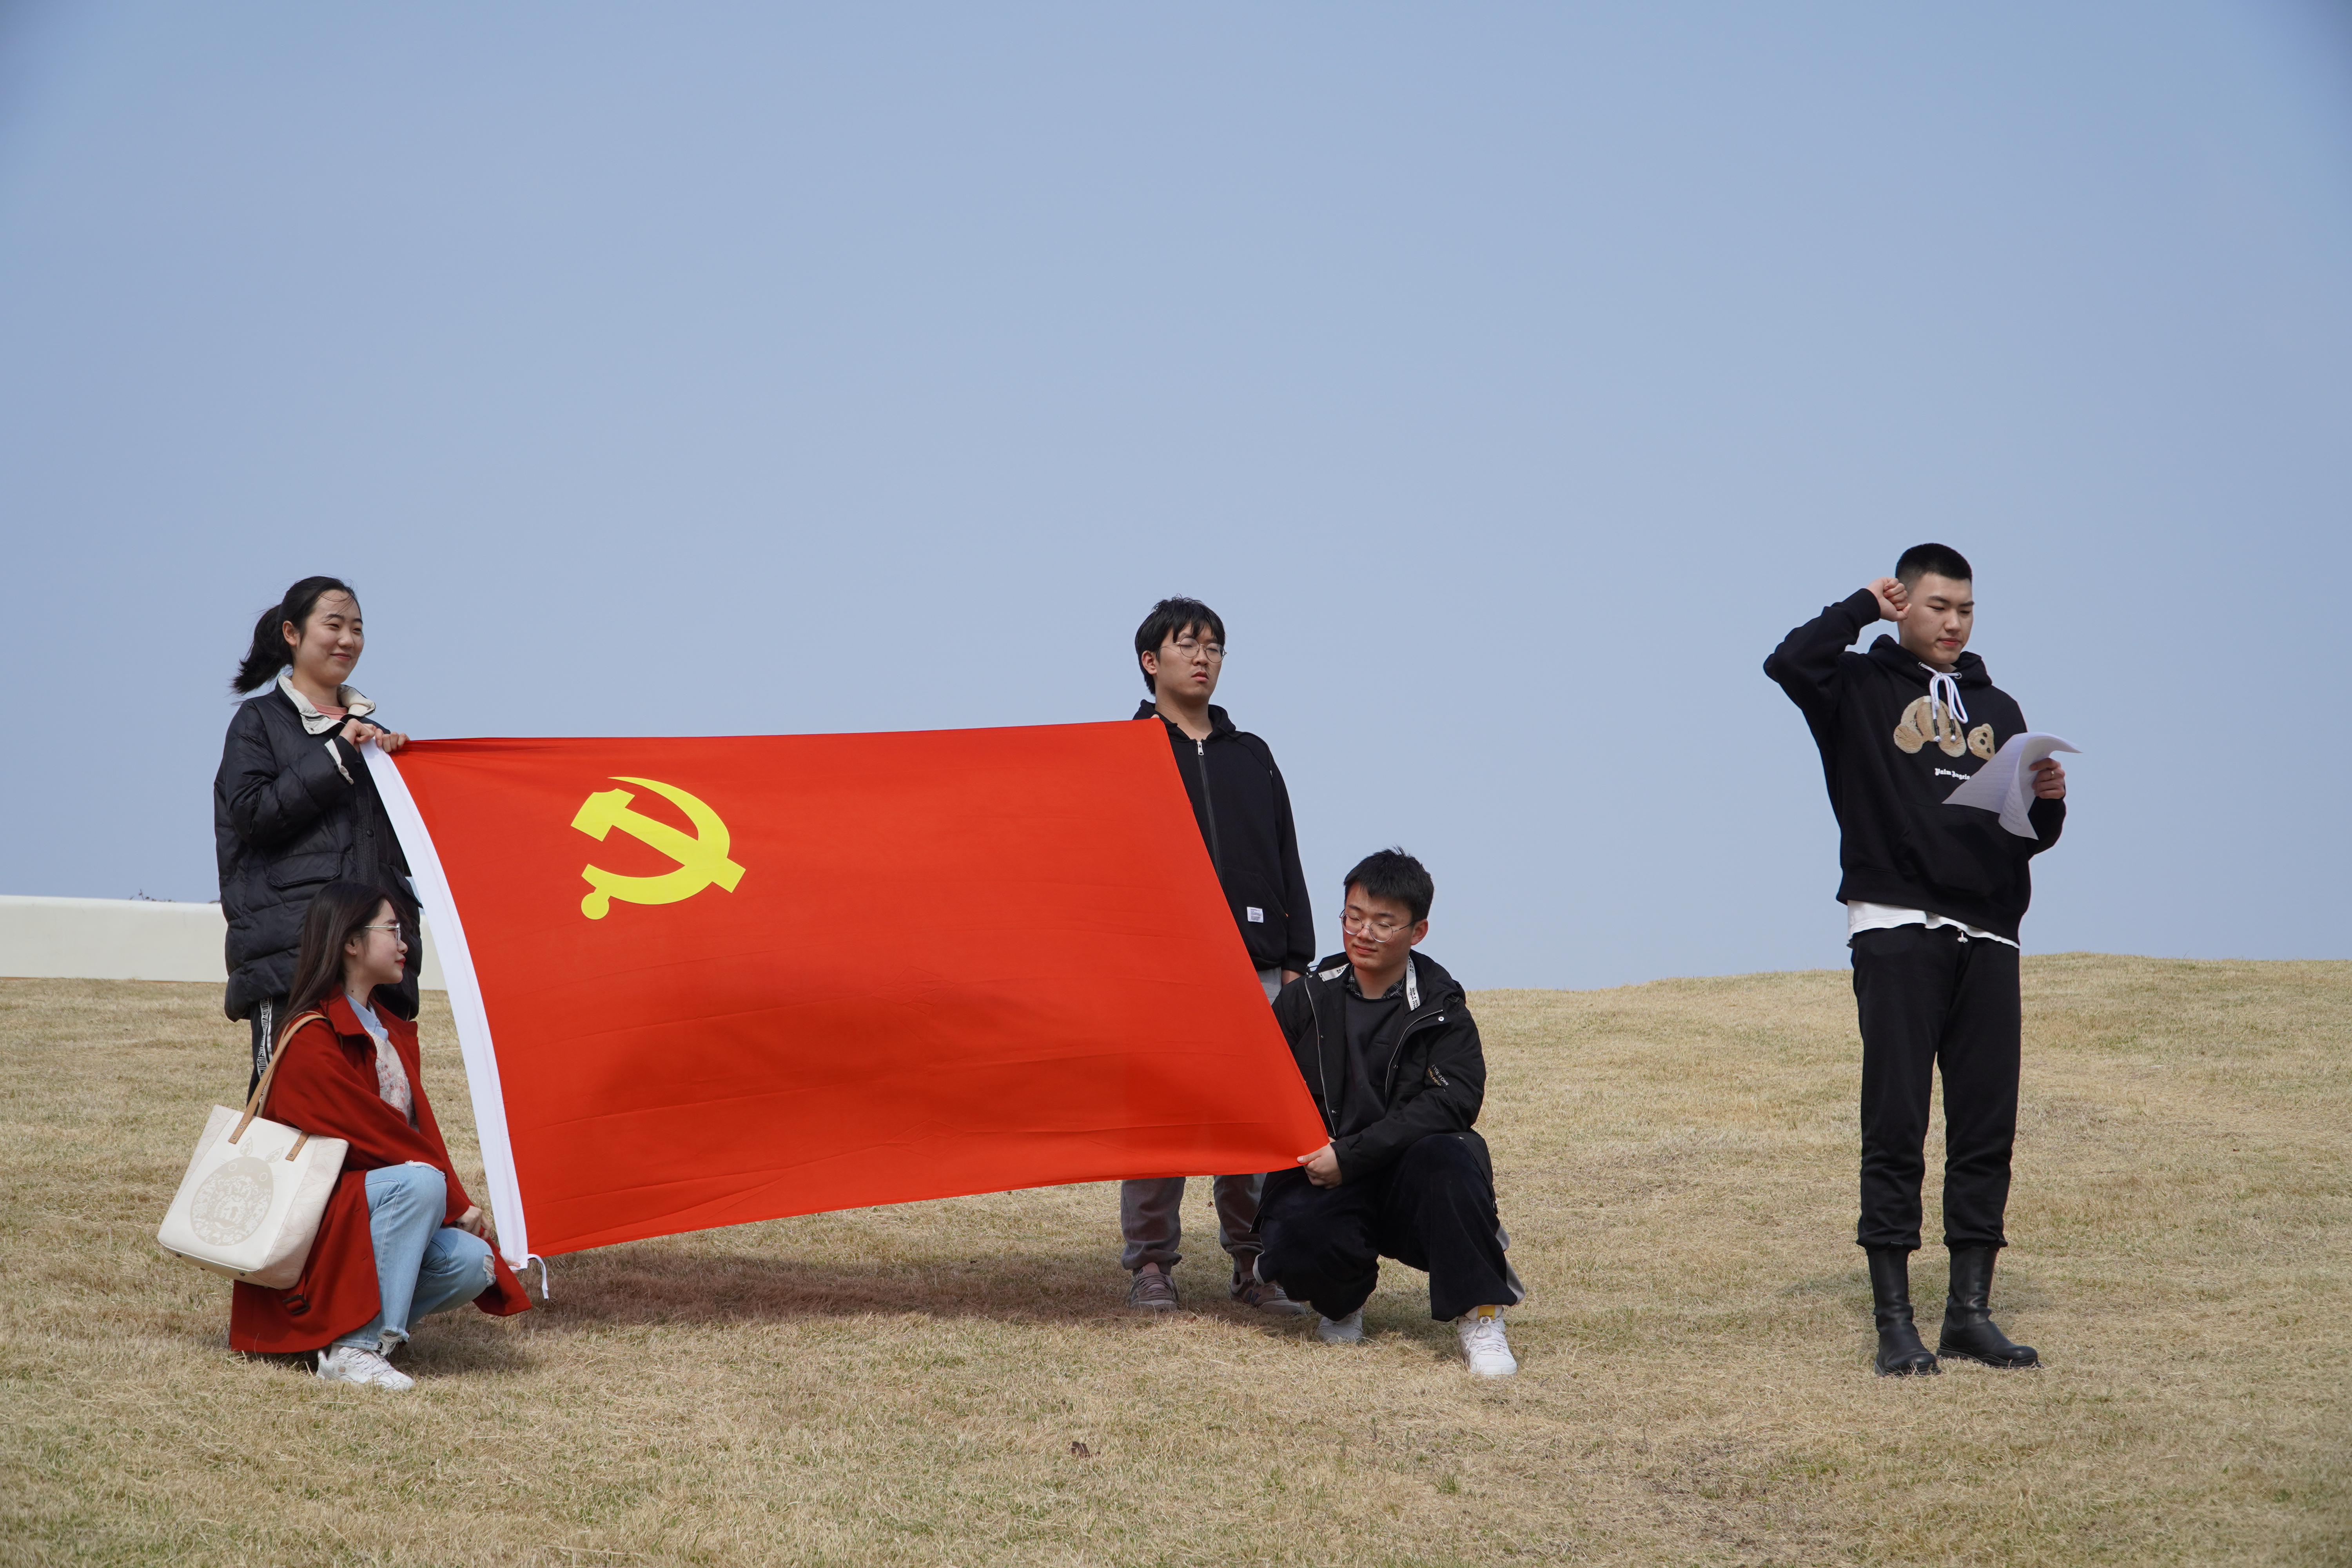 团员与党旗合影,宣读入党誓词 崔文琪摄影